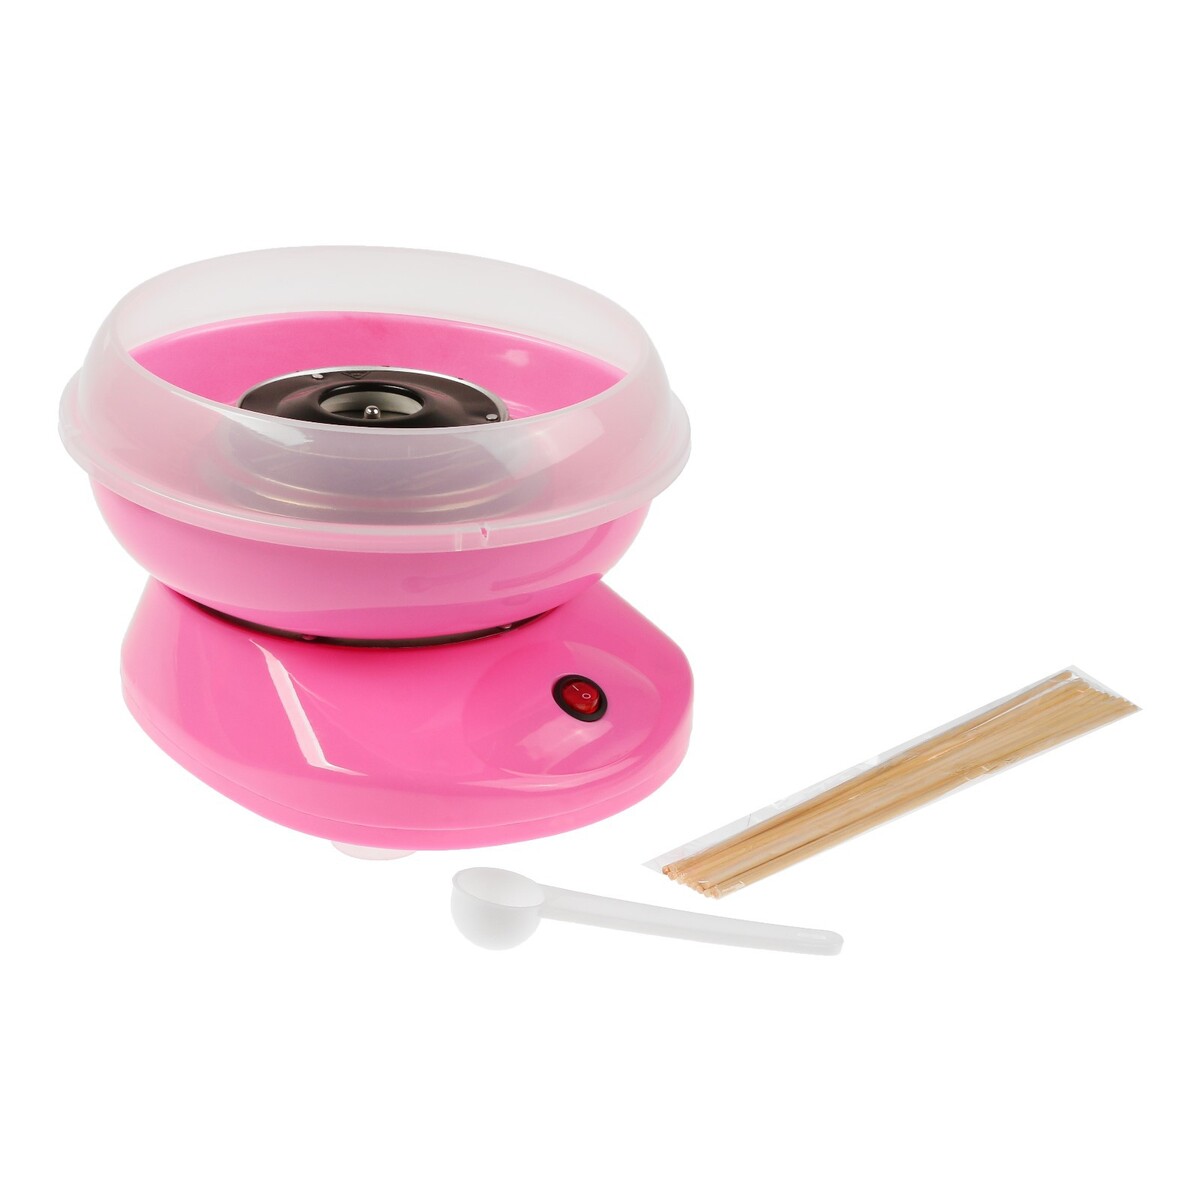 Аппарат для приготовления сладкой ваты luazon lcc-01, 500 вт, розовый аппарат для маникюра luazon lmh 03 6 насадок 35 вт до 30000 об мин бело черная